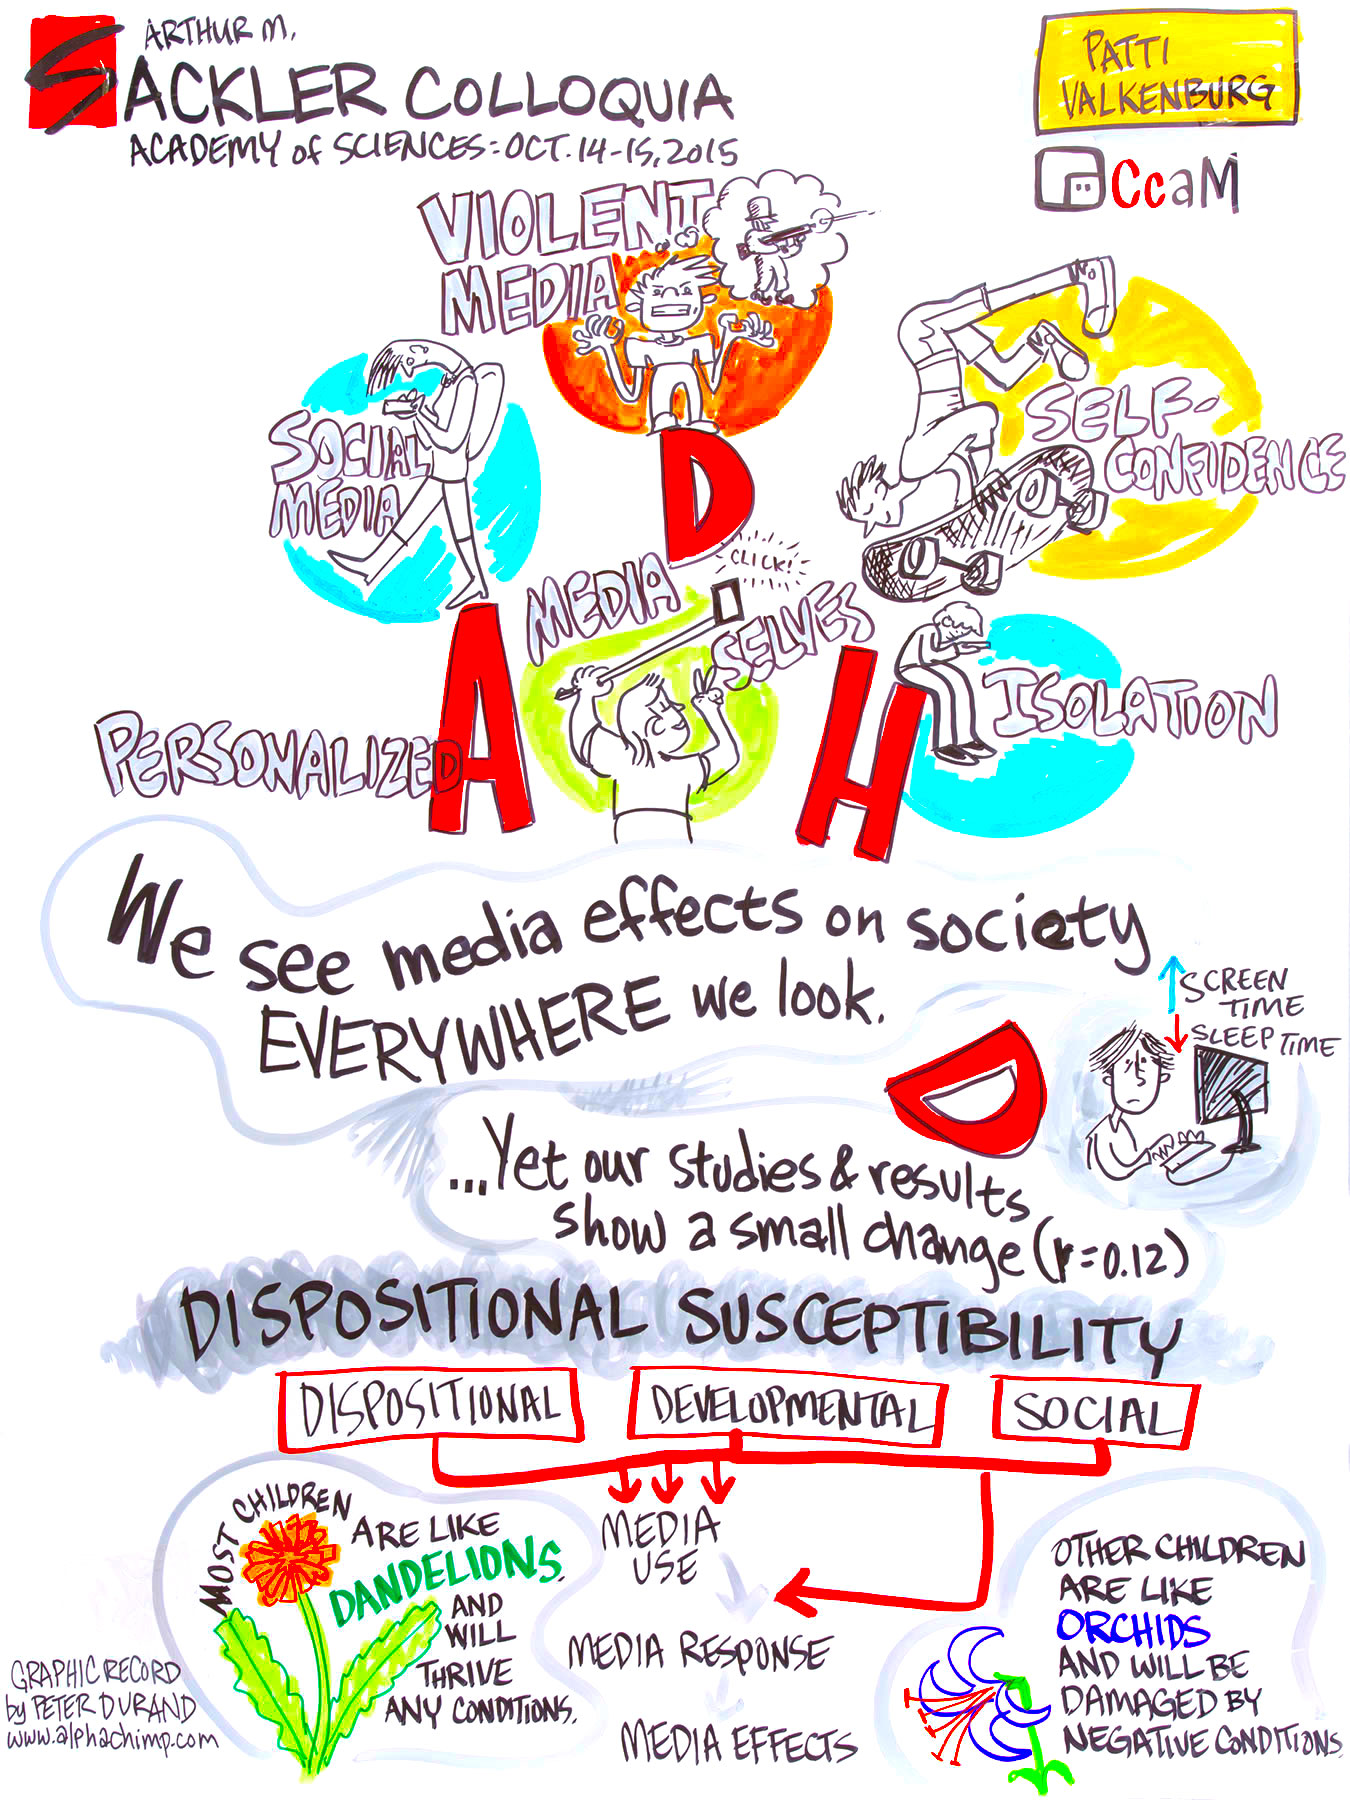 ADHD and social media